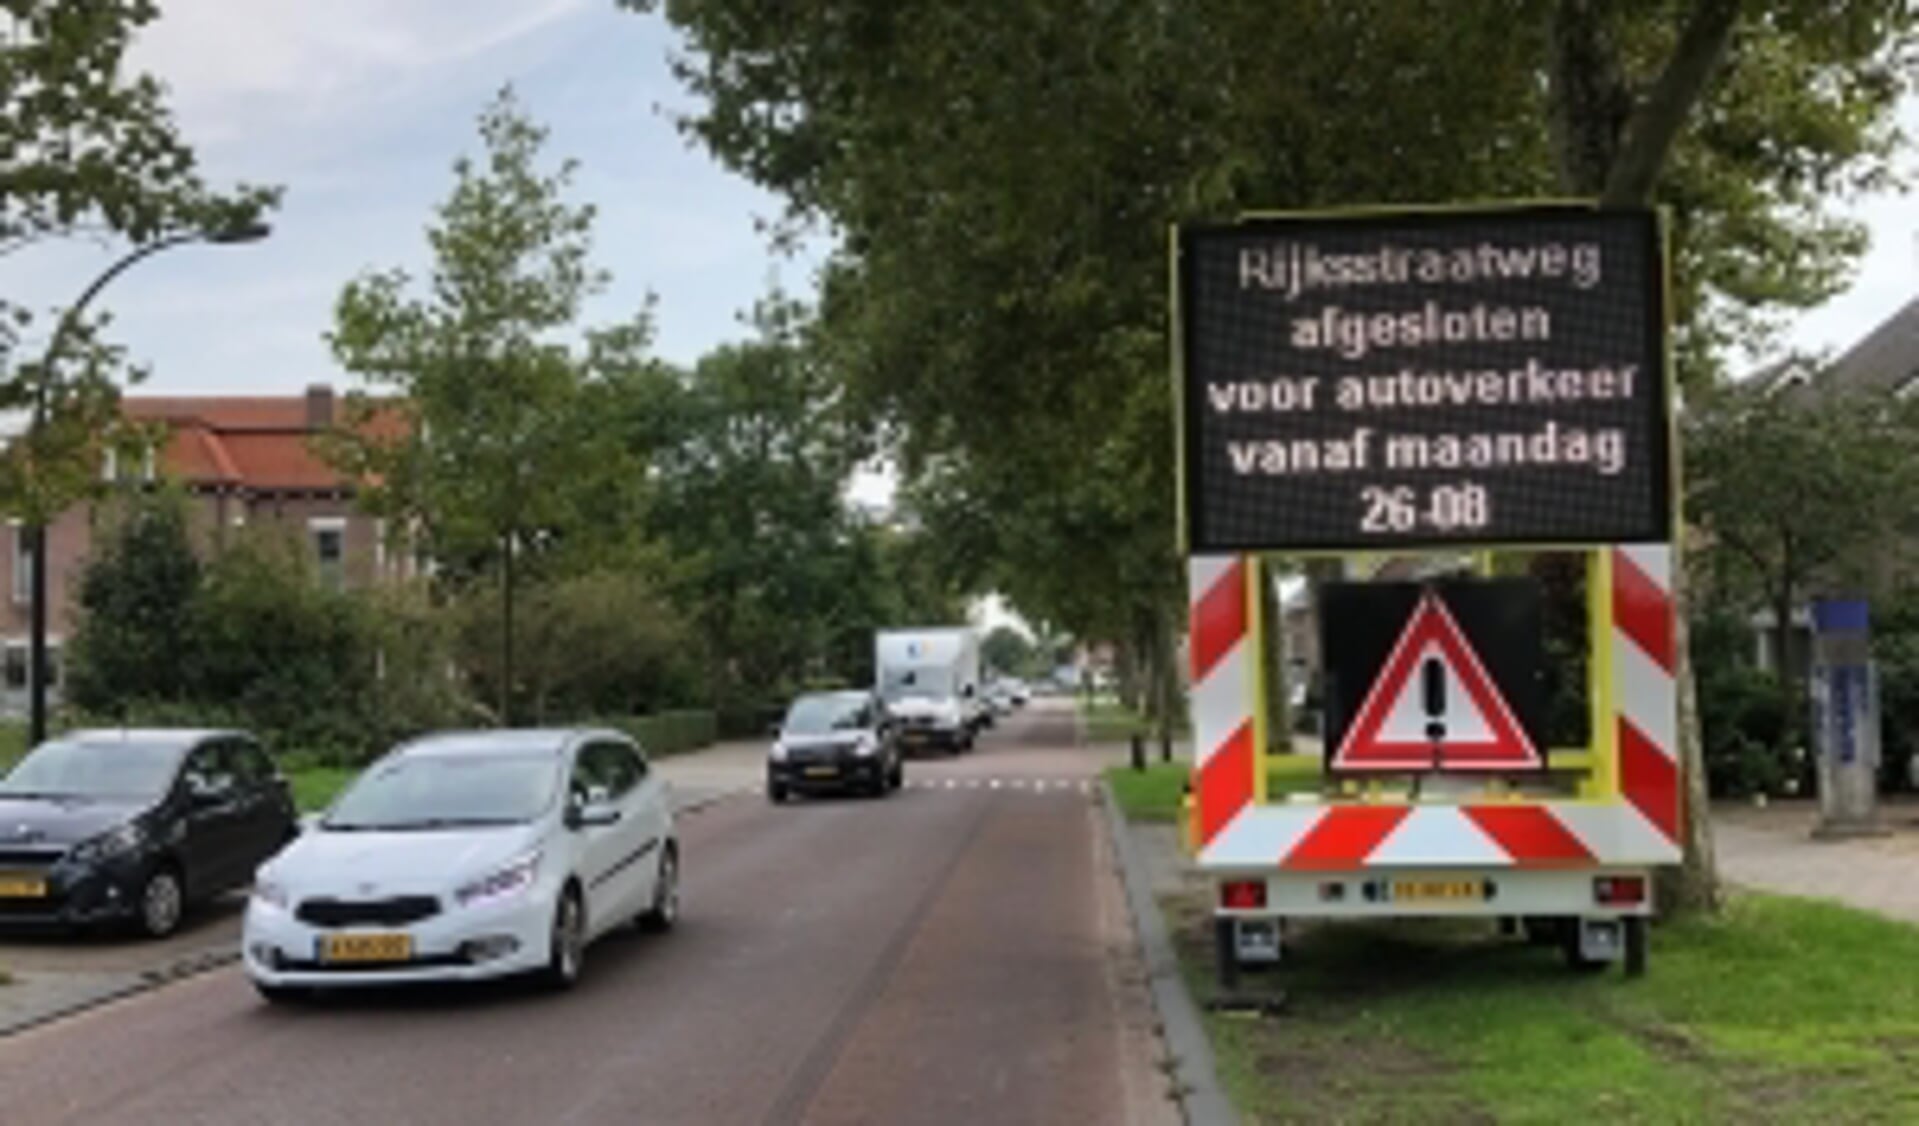 De Alkmaarseweg/Rijkstraatweg wordt medio april veiliger gemaakt.